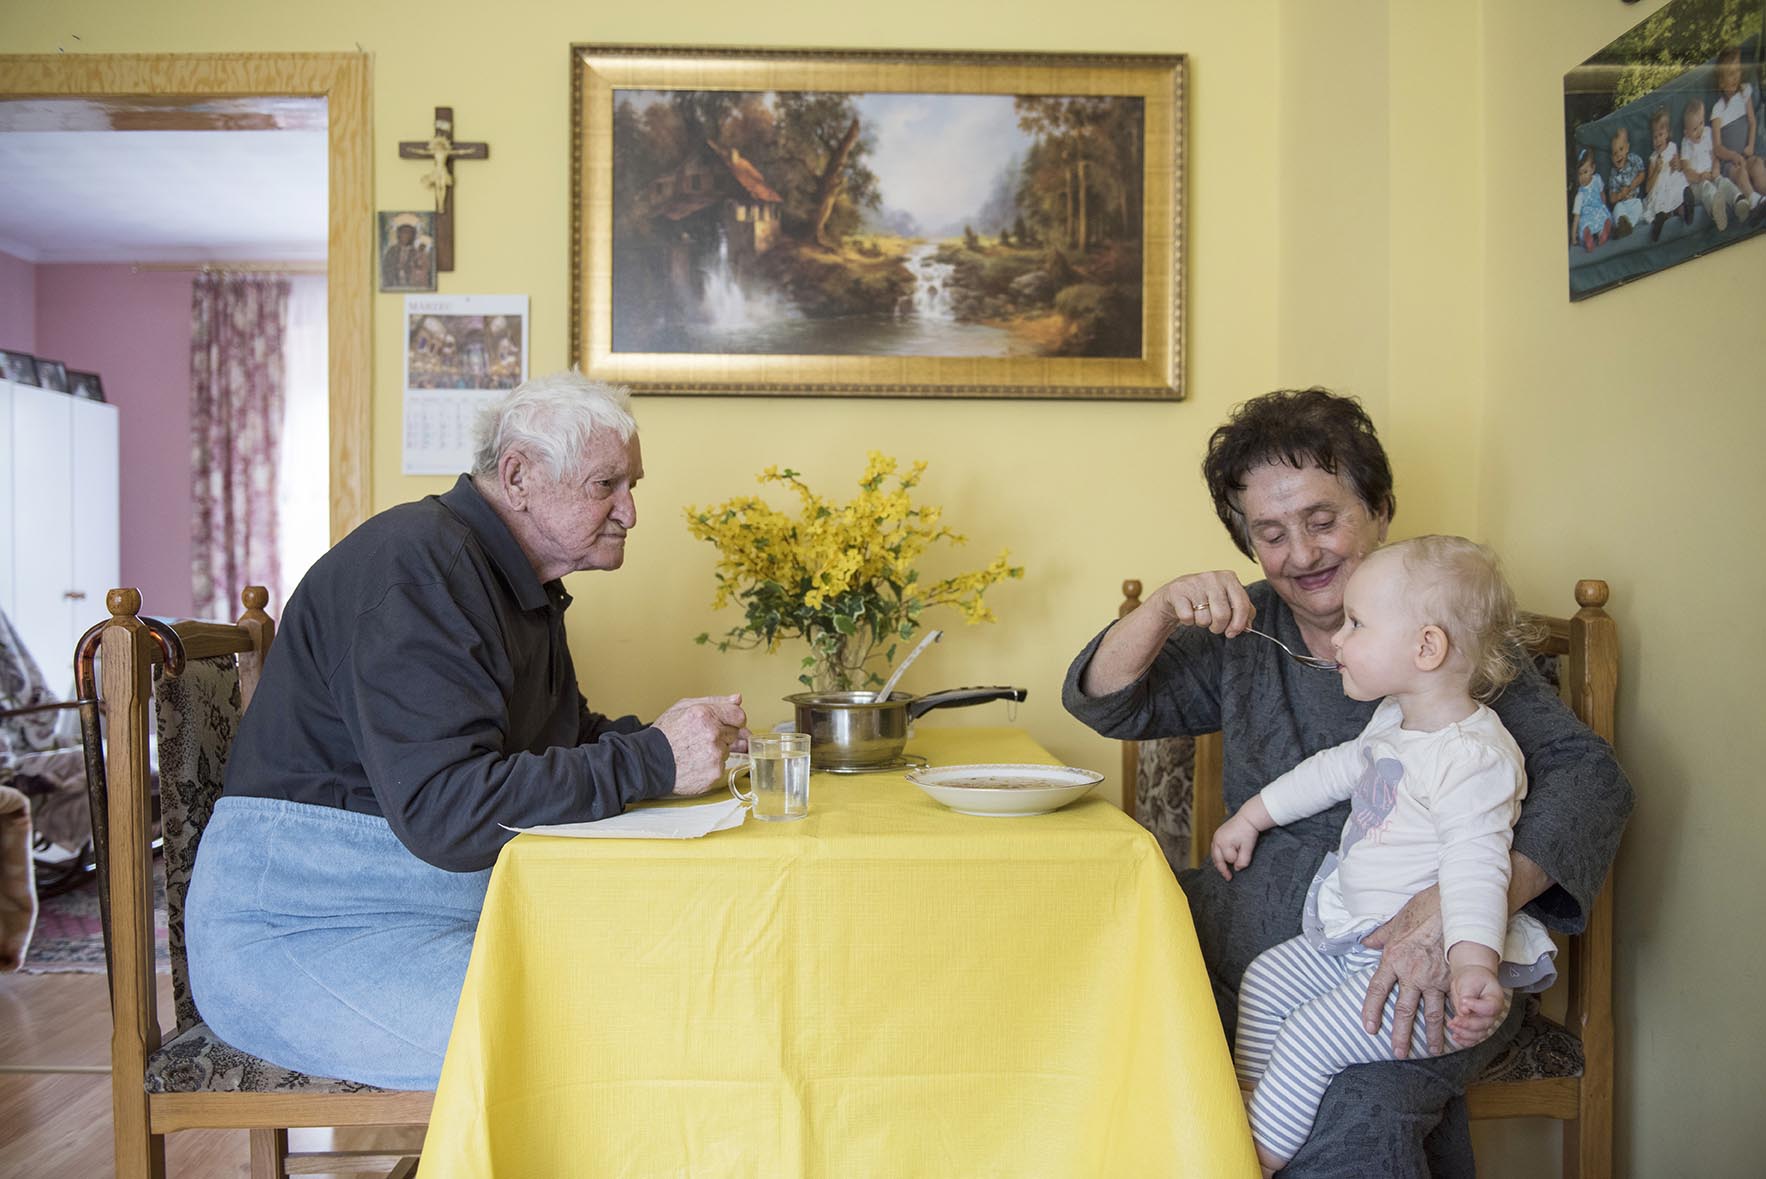 Obiady dla całej rodziny szykuje córka Pani Marysi, Felicja. W odwiedziny do dziadków przyjechała wnuczka Karolina z prawnuczką Larą.